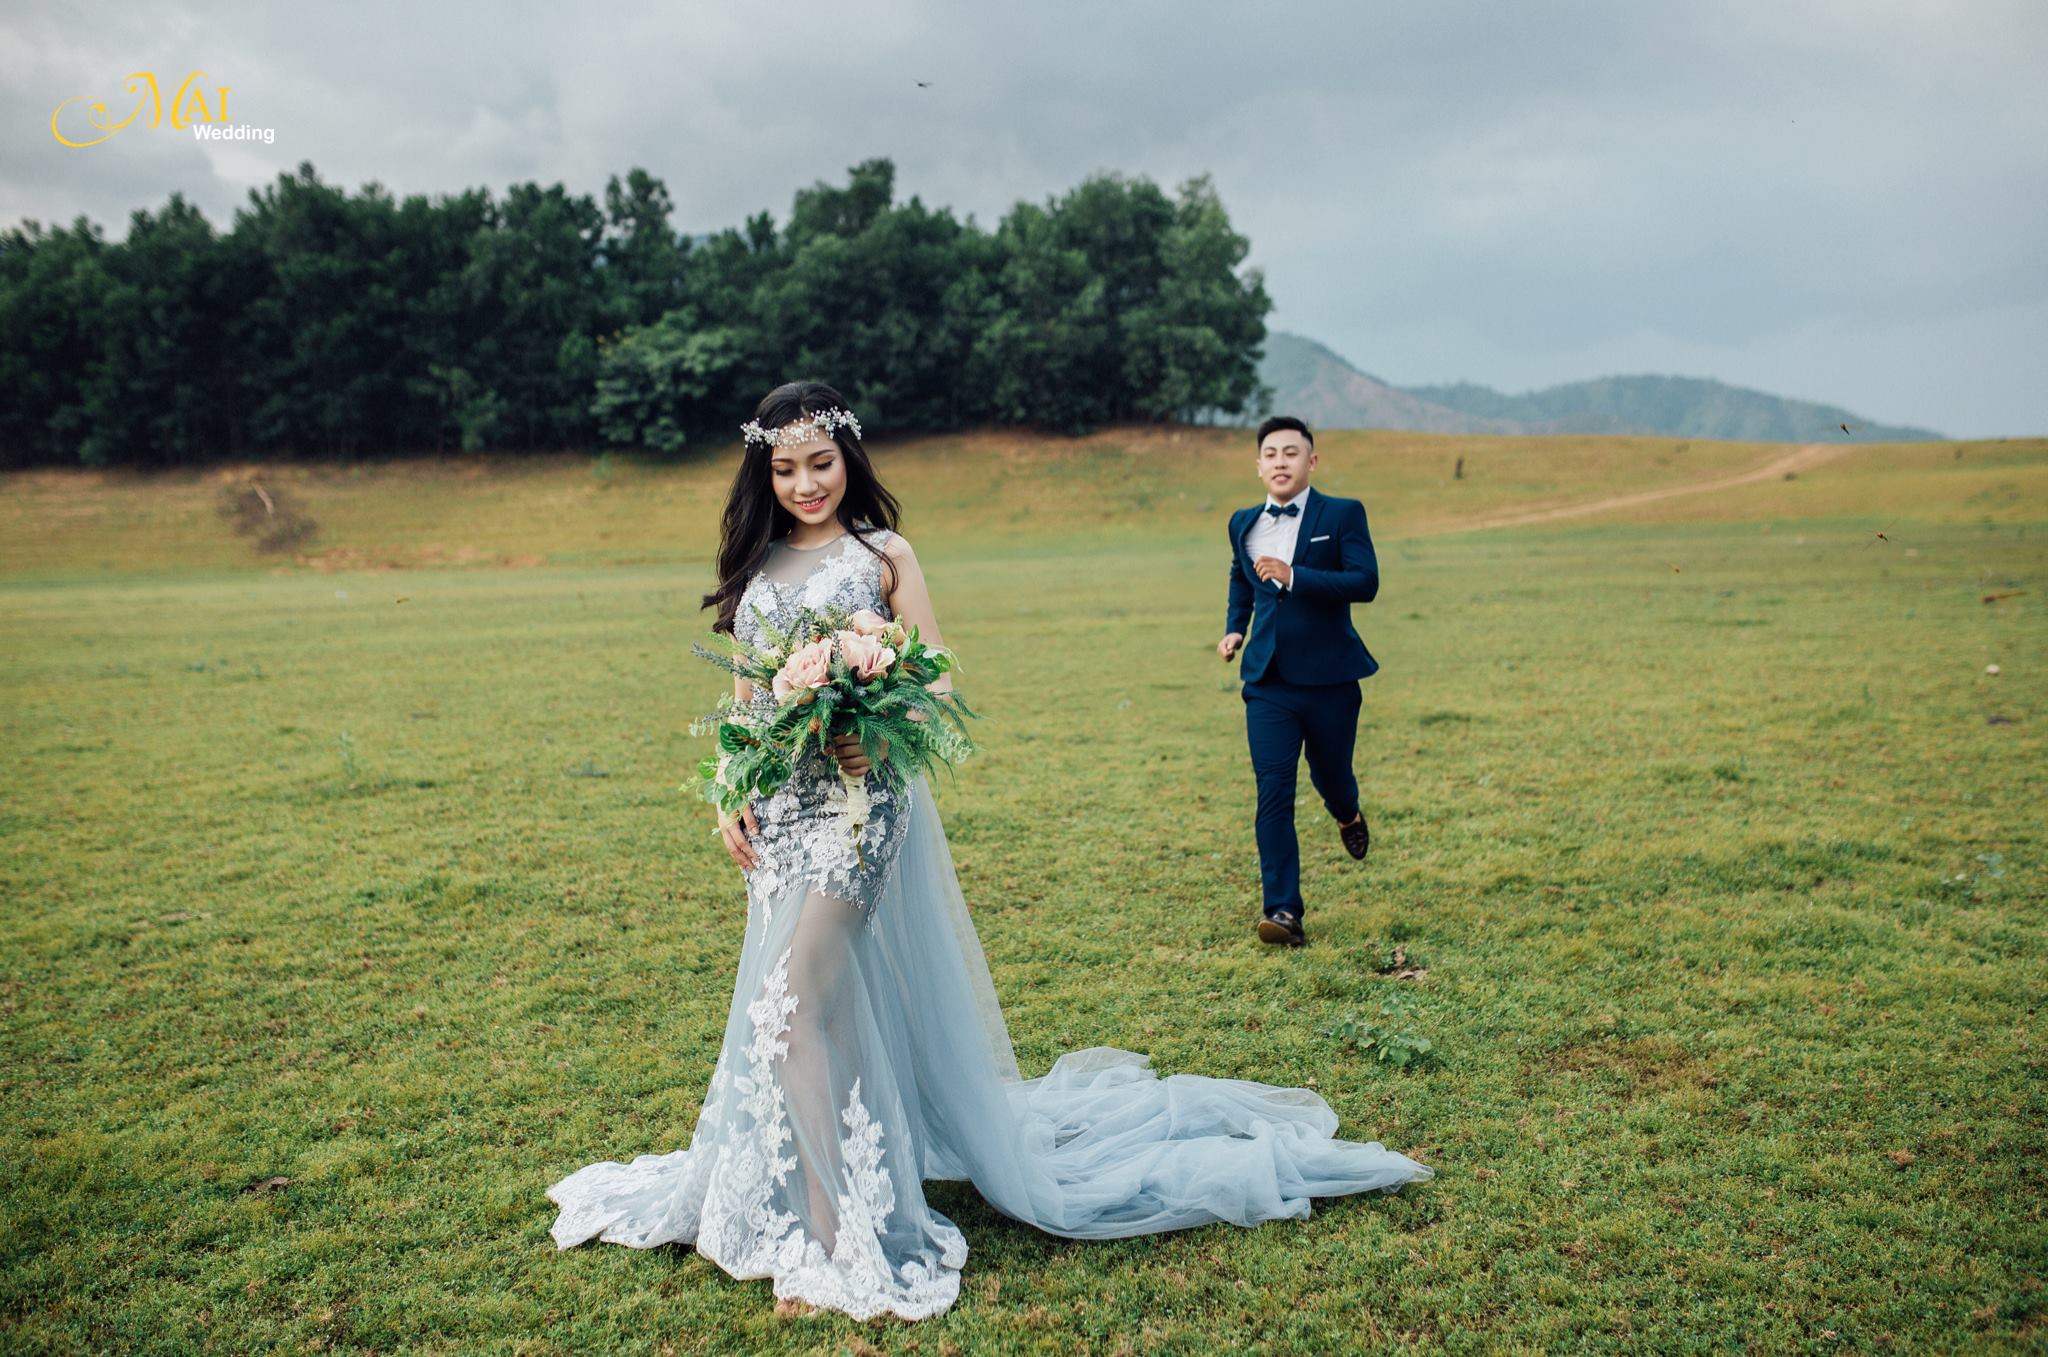 Váy cưới siêu đẹp của MaiWedding - Đà Nẵng